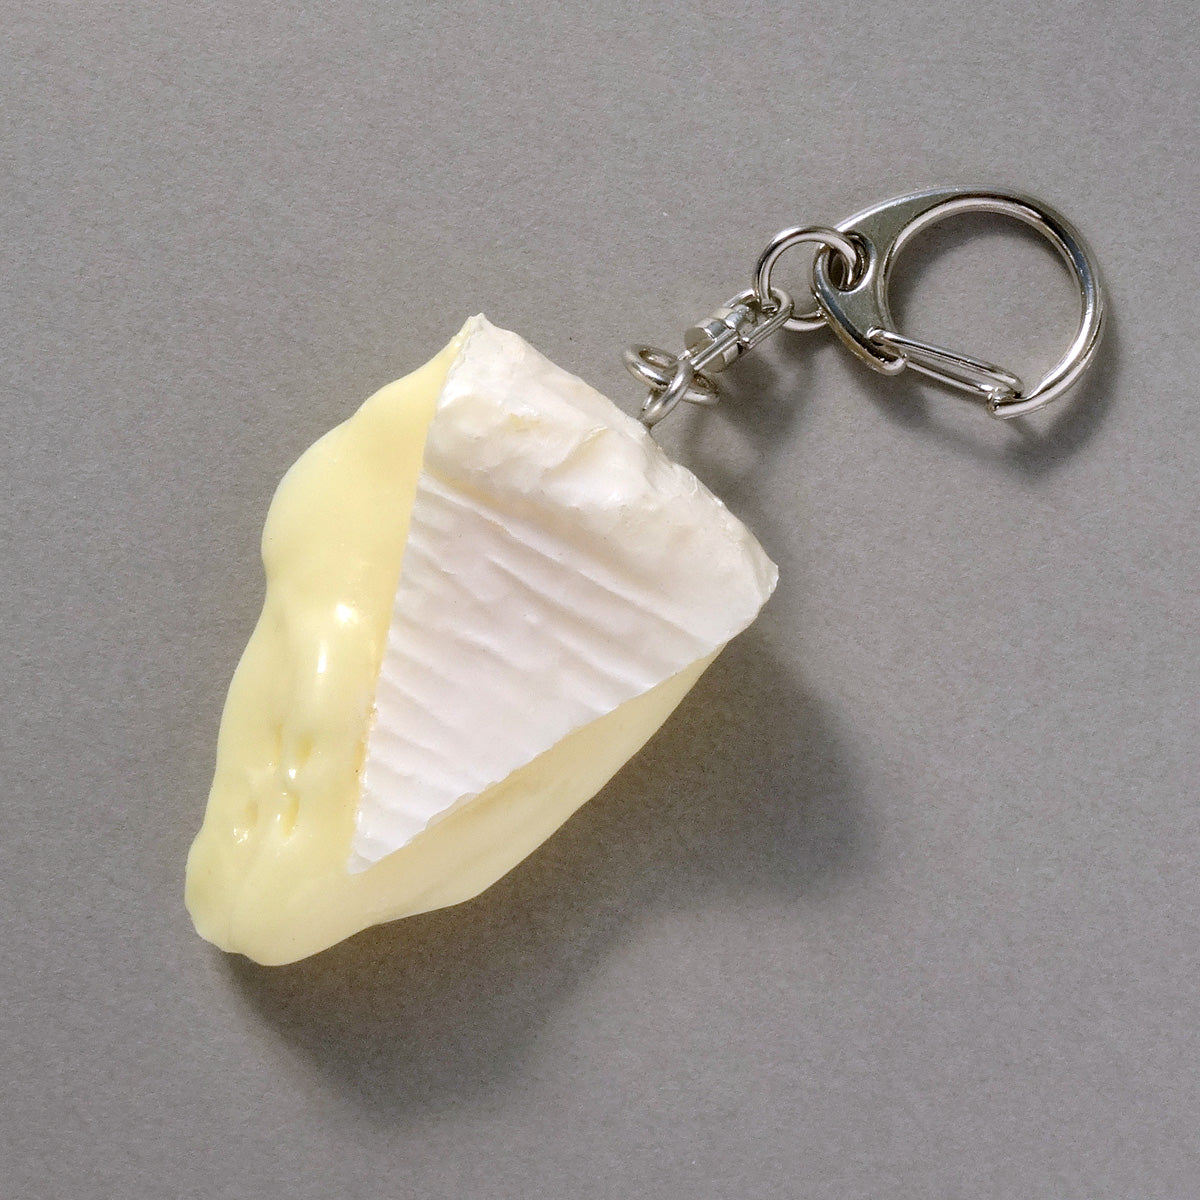  食品サンプル(IWASAKI)「カマンベールチーズのキーリング 」の商品画像です。